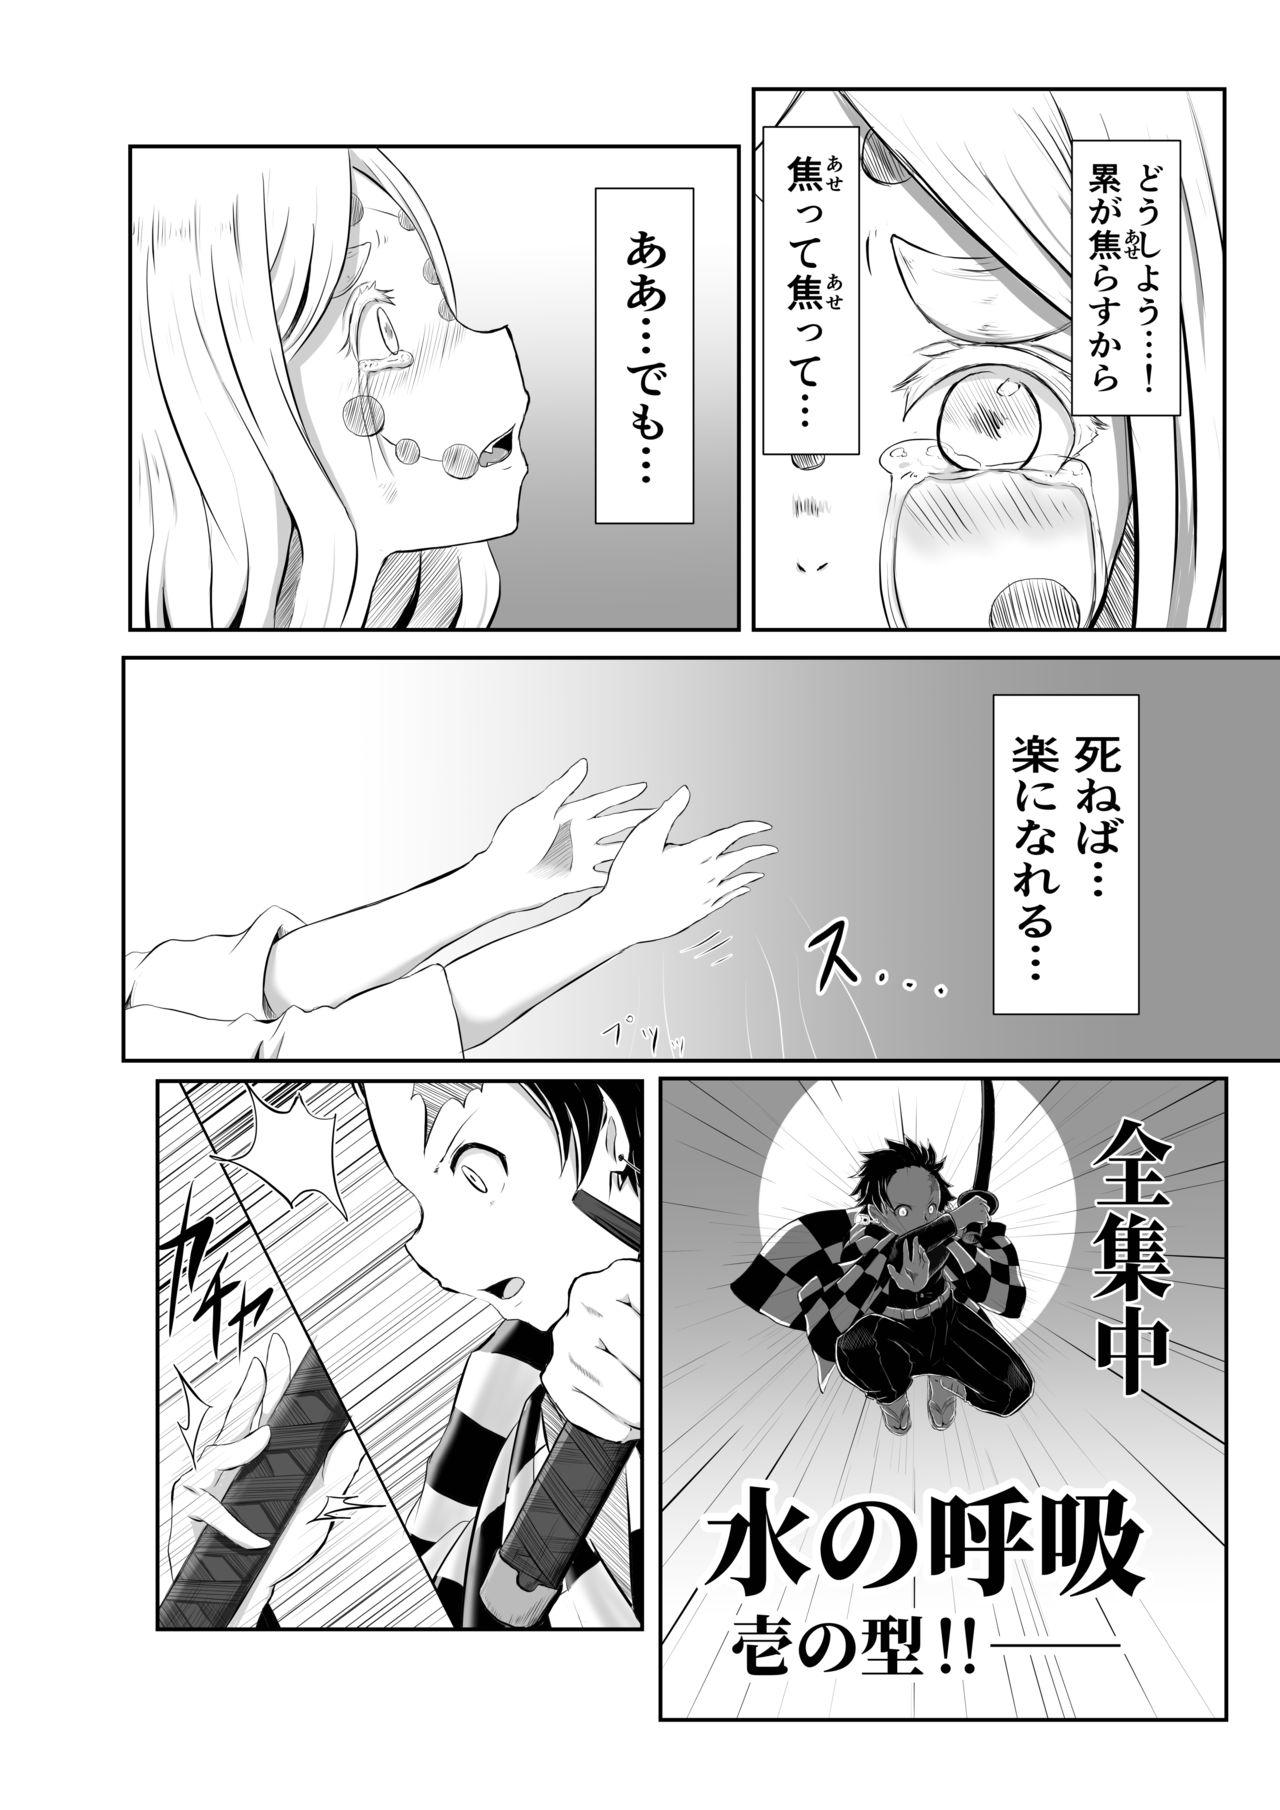 Footworship Hinokami Sex. - Kimetsu no yaiba | demon slayer Perfect Body - Page 2